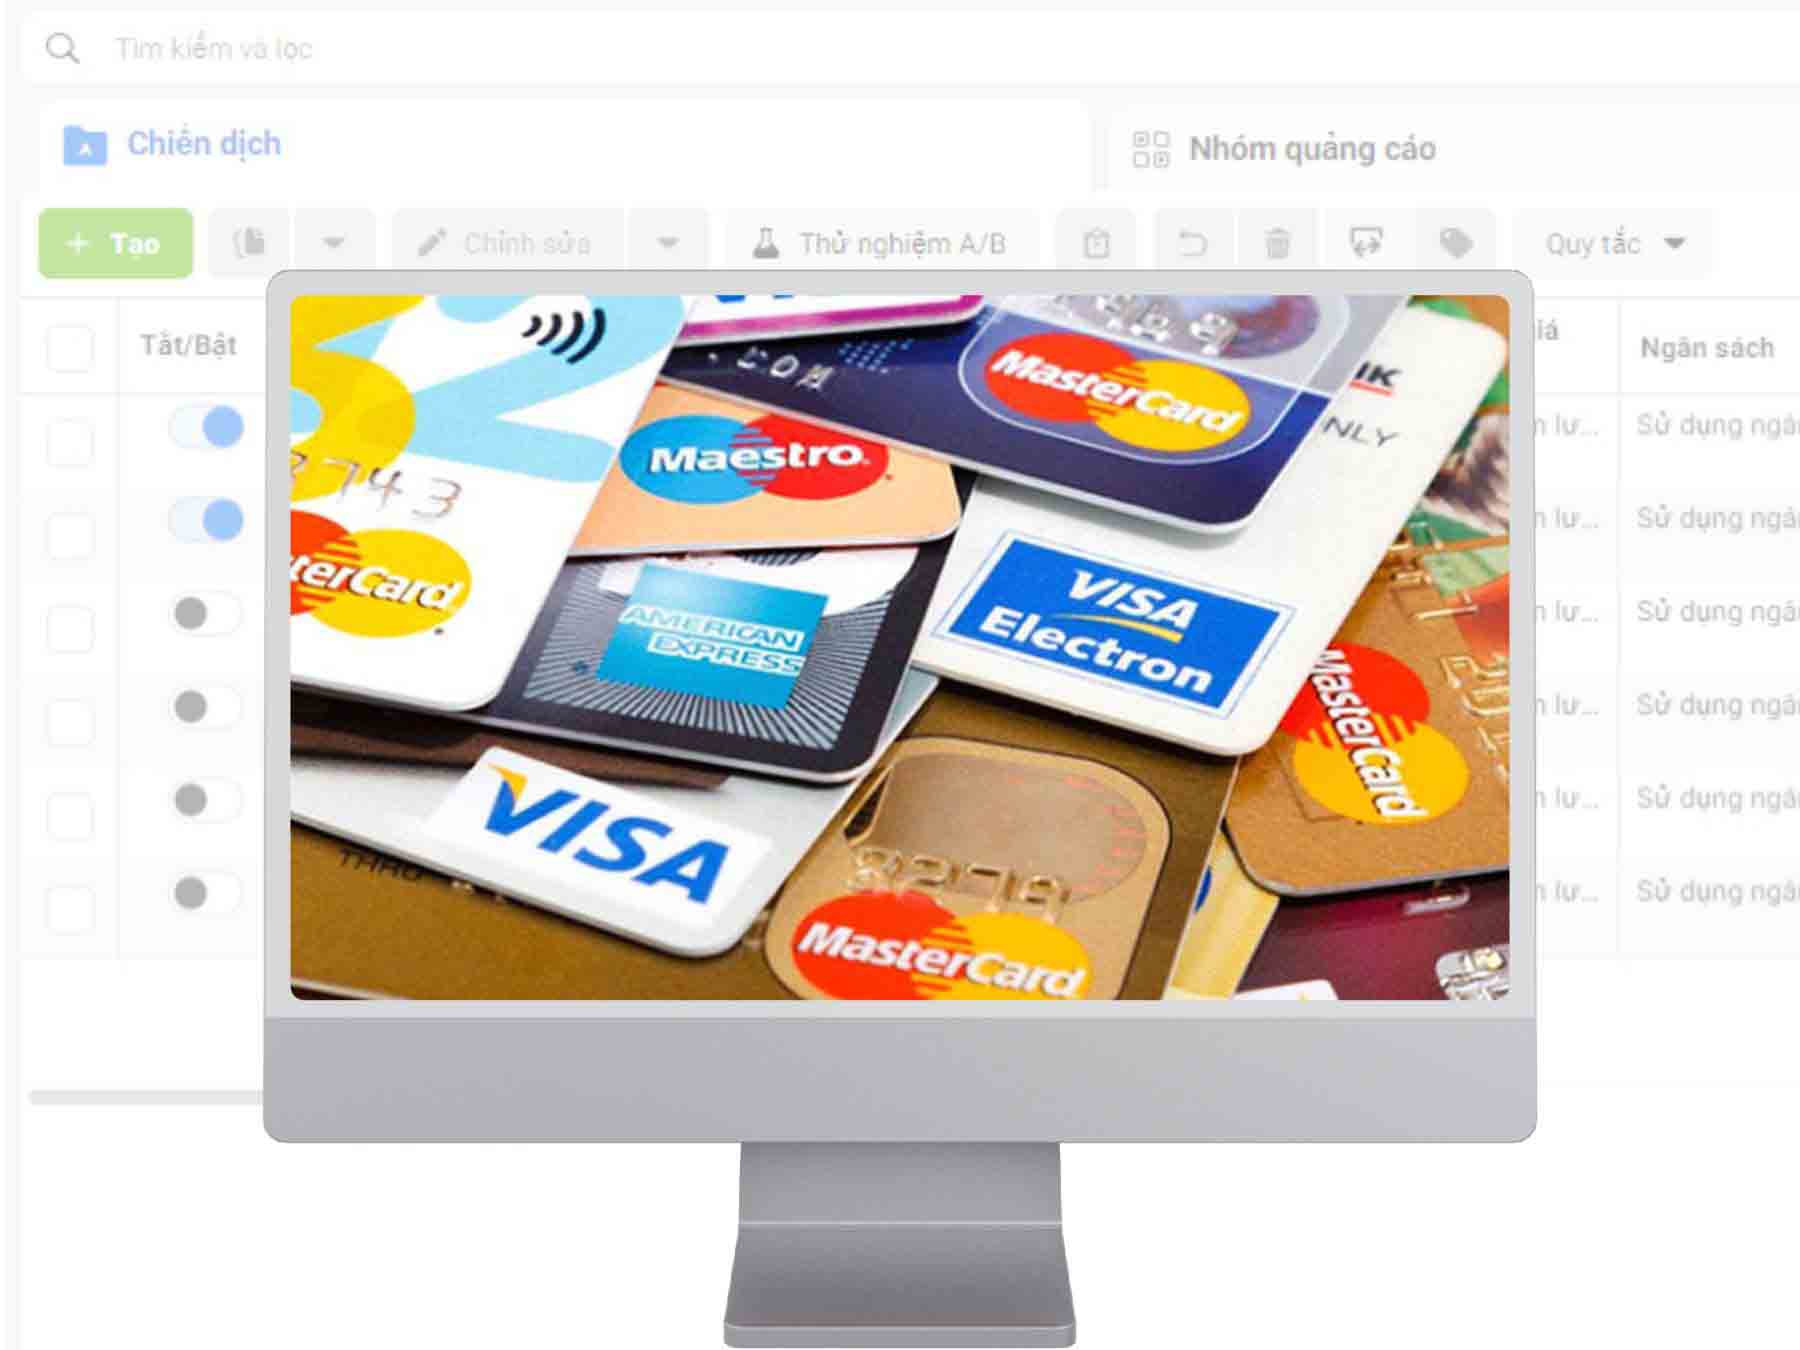 Cách nạp thêm tiền vào tài khoản quảng cáo Facebook qua thẻ Visa/Mastercard